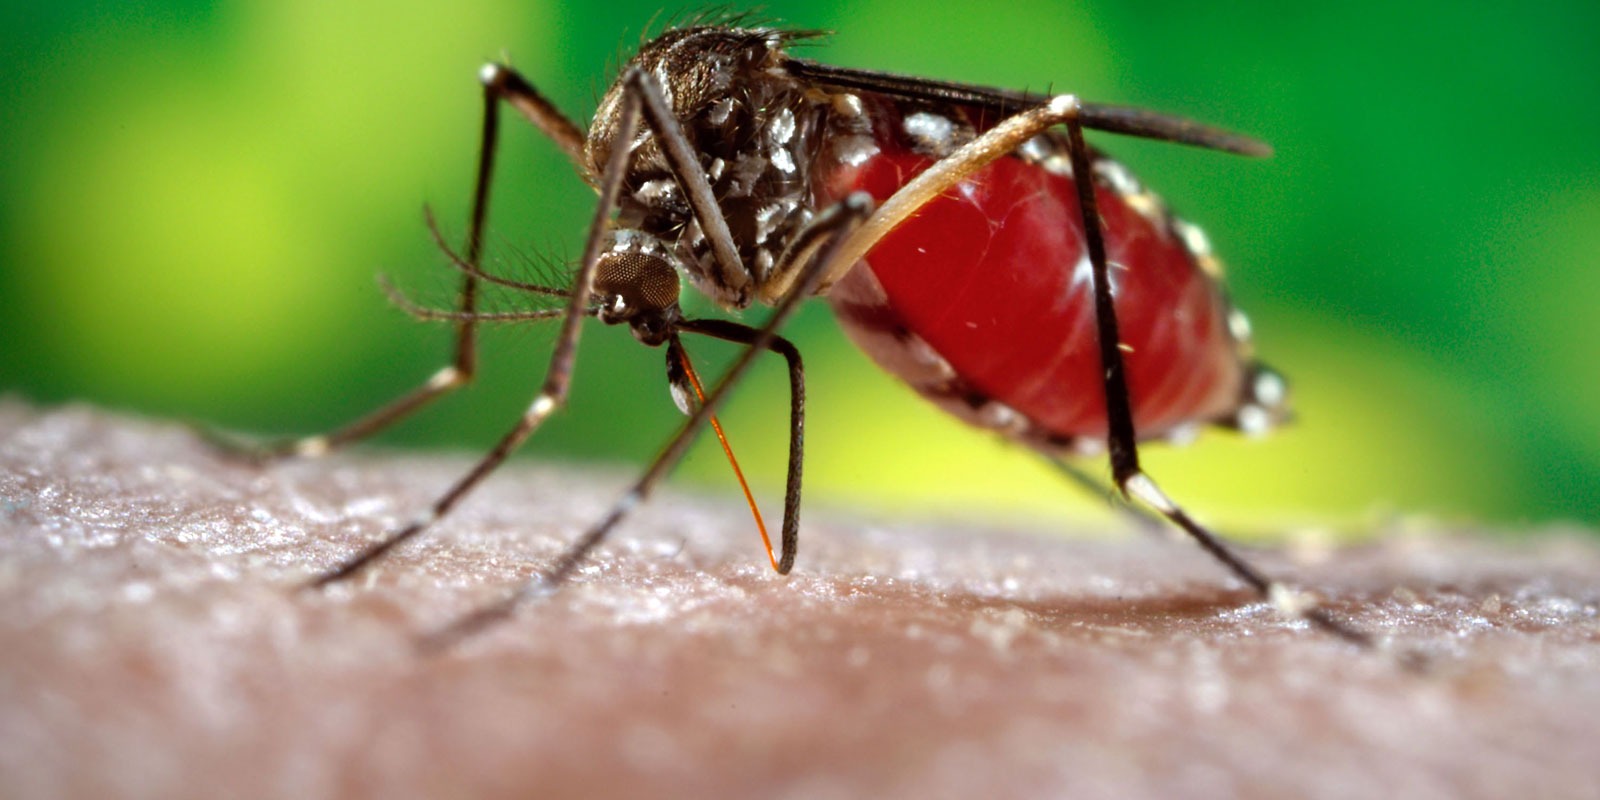 Segundo levantamento do Ministério da Saúde, em apenas três capitais, o índice de infestação por Aedes aegypti é satisfatório.